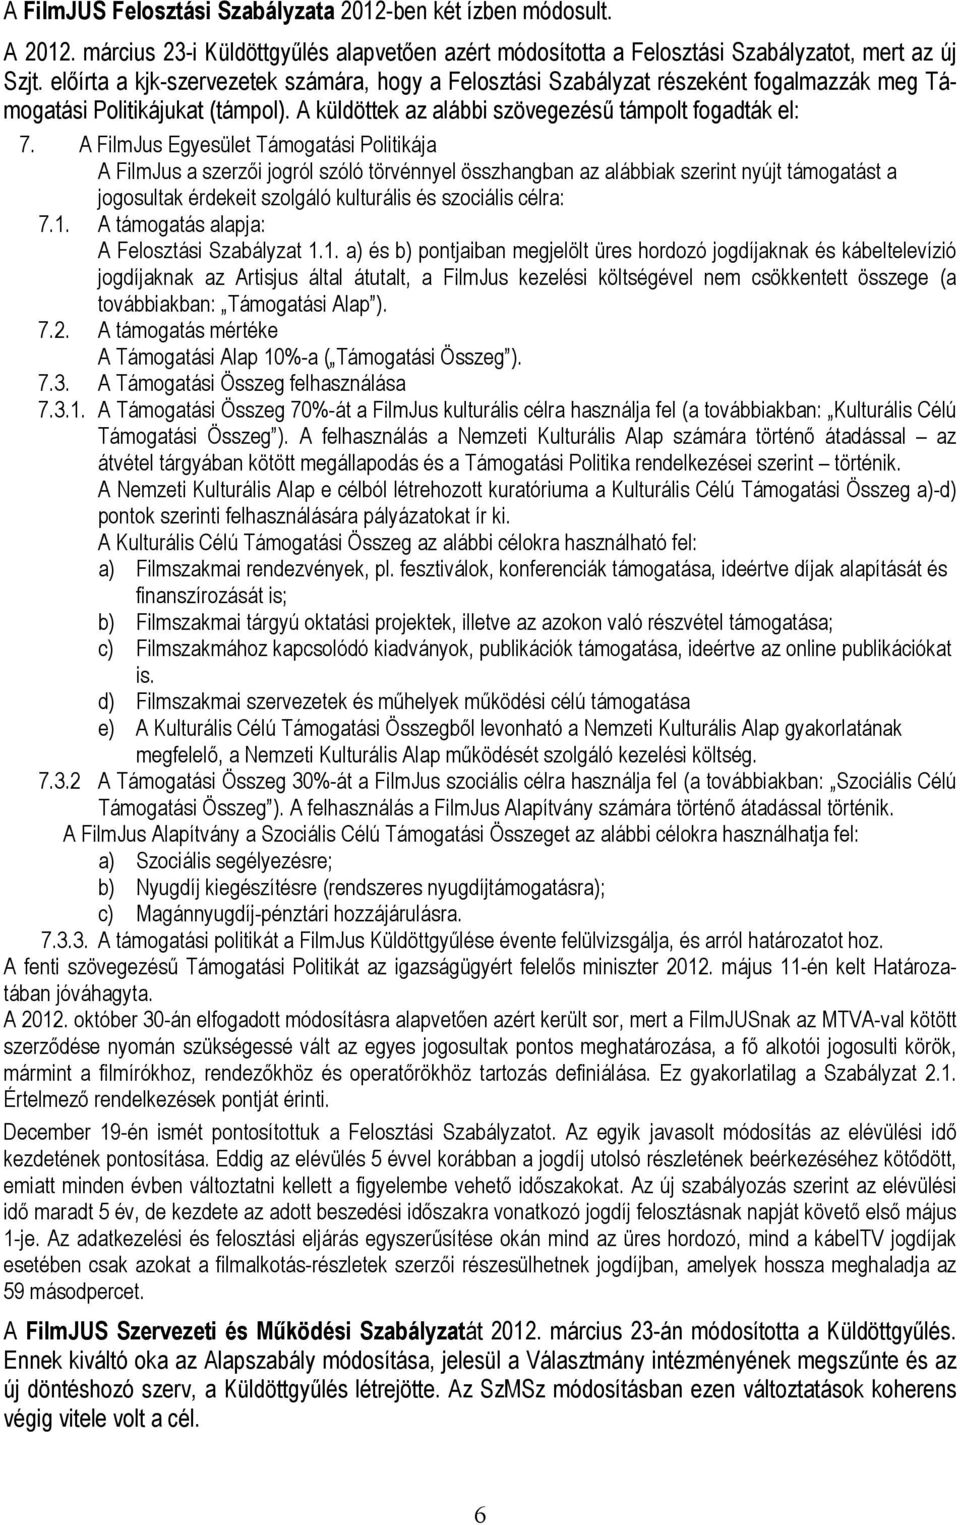 A FilmJus Egyesület Támogatási Politikája A FilmJus a szerzıi jogról szóló törvénnyel összhangban az alábbiak szerint nyújt támogatást a jogosultak érdekeit szolgáló kulturális és szociális célra: 7.